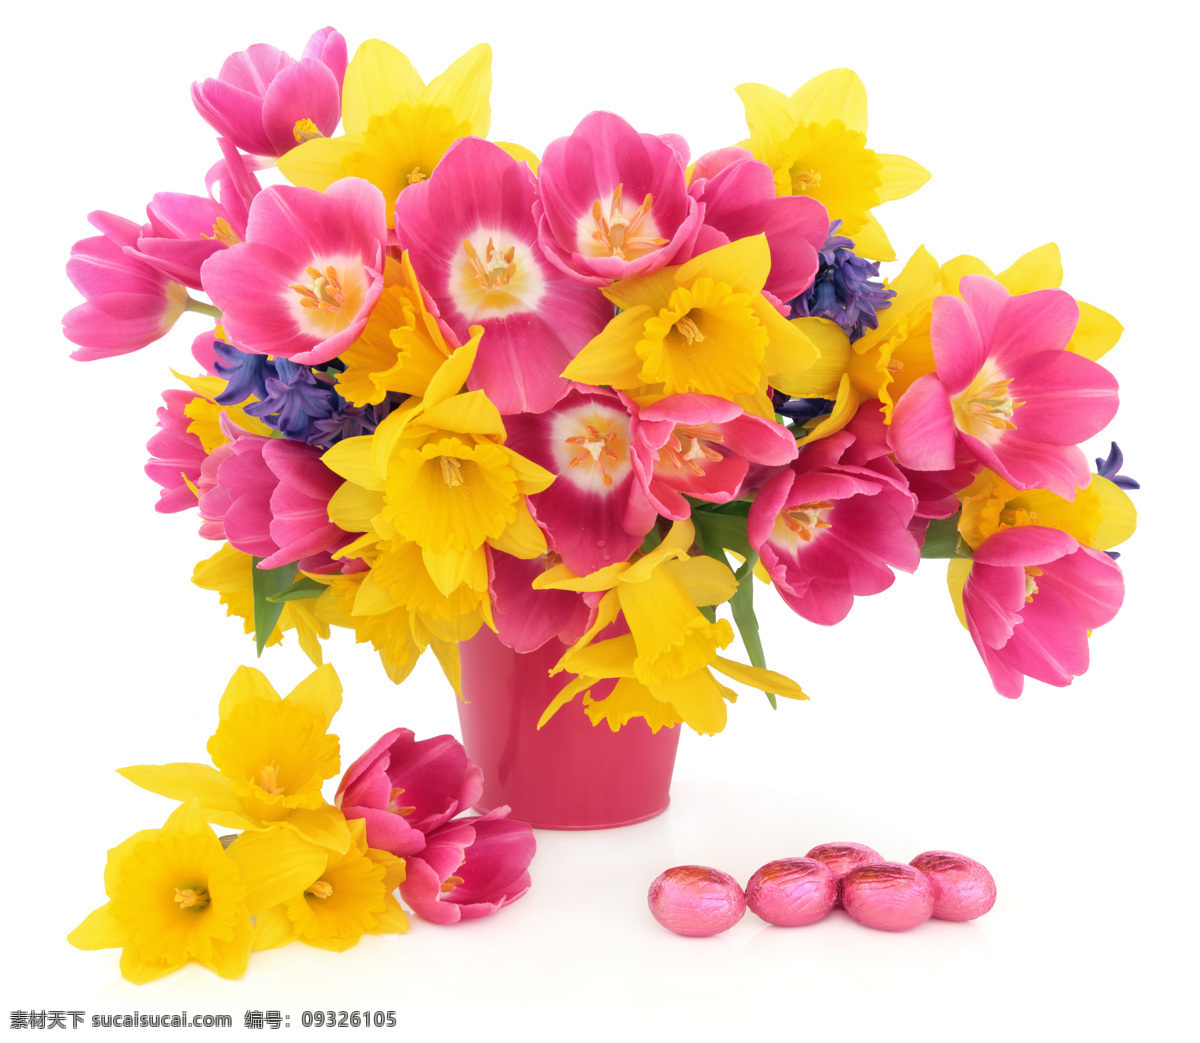 鲜花 盆景 彩蛋 花朵 装饰 复活节 节日庆典 生活百科